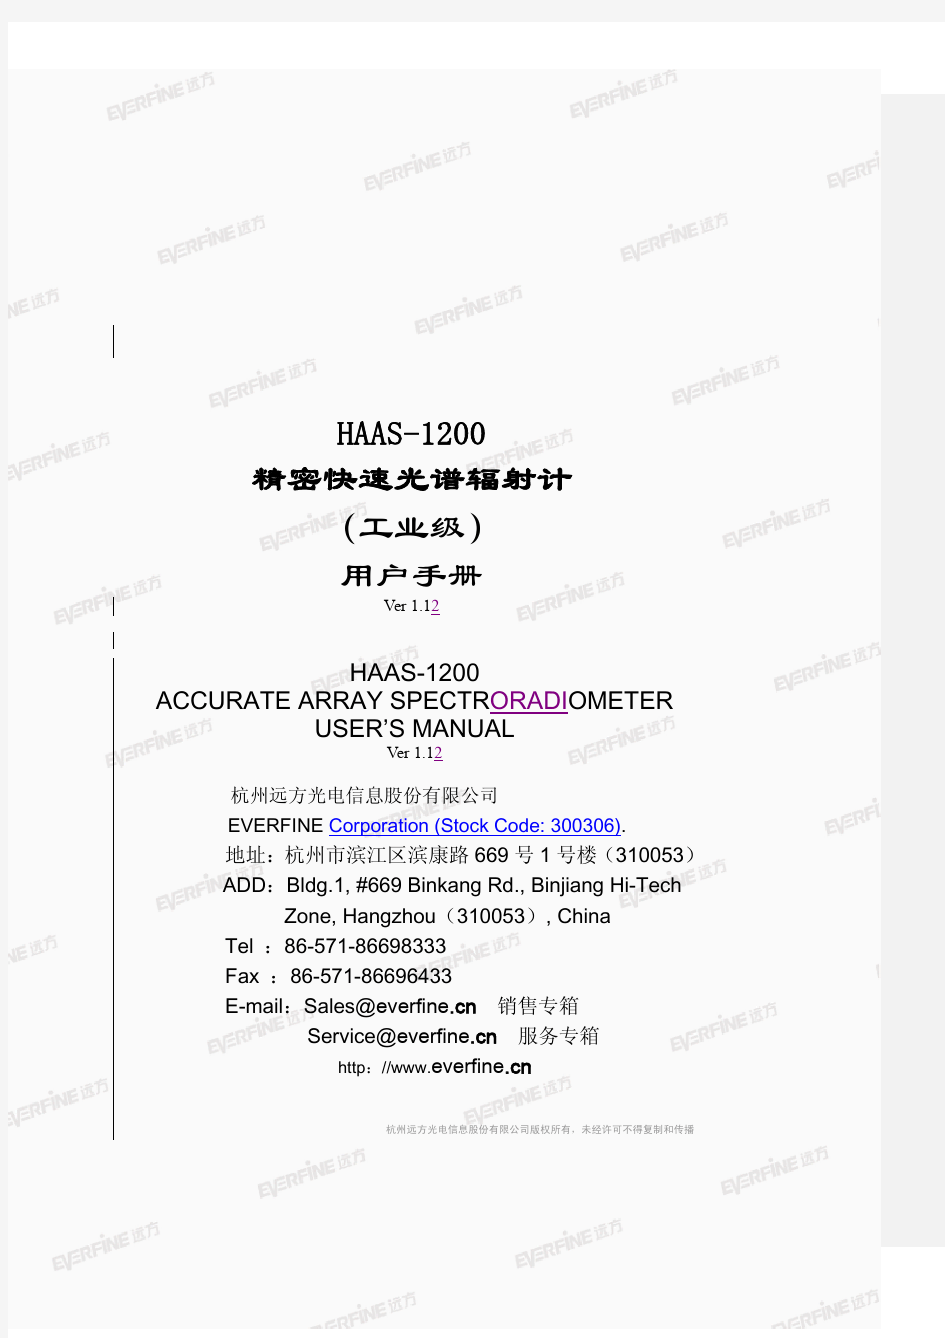 远方光谱系统HAAS-1200 用户手册V1.12